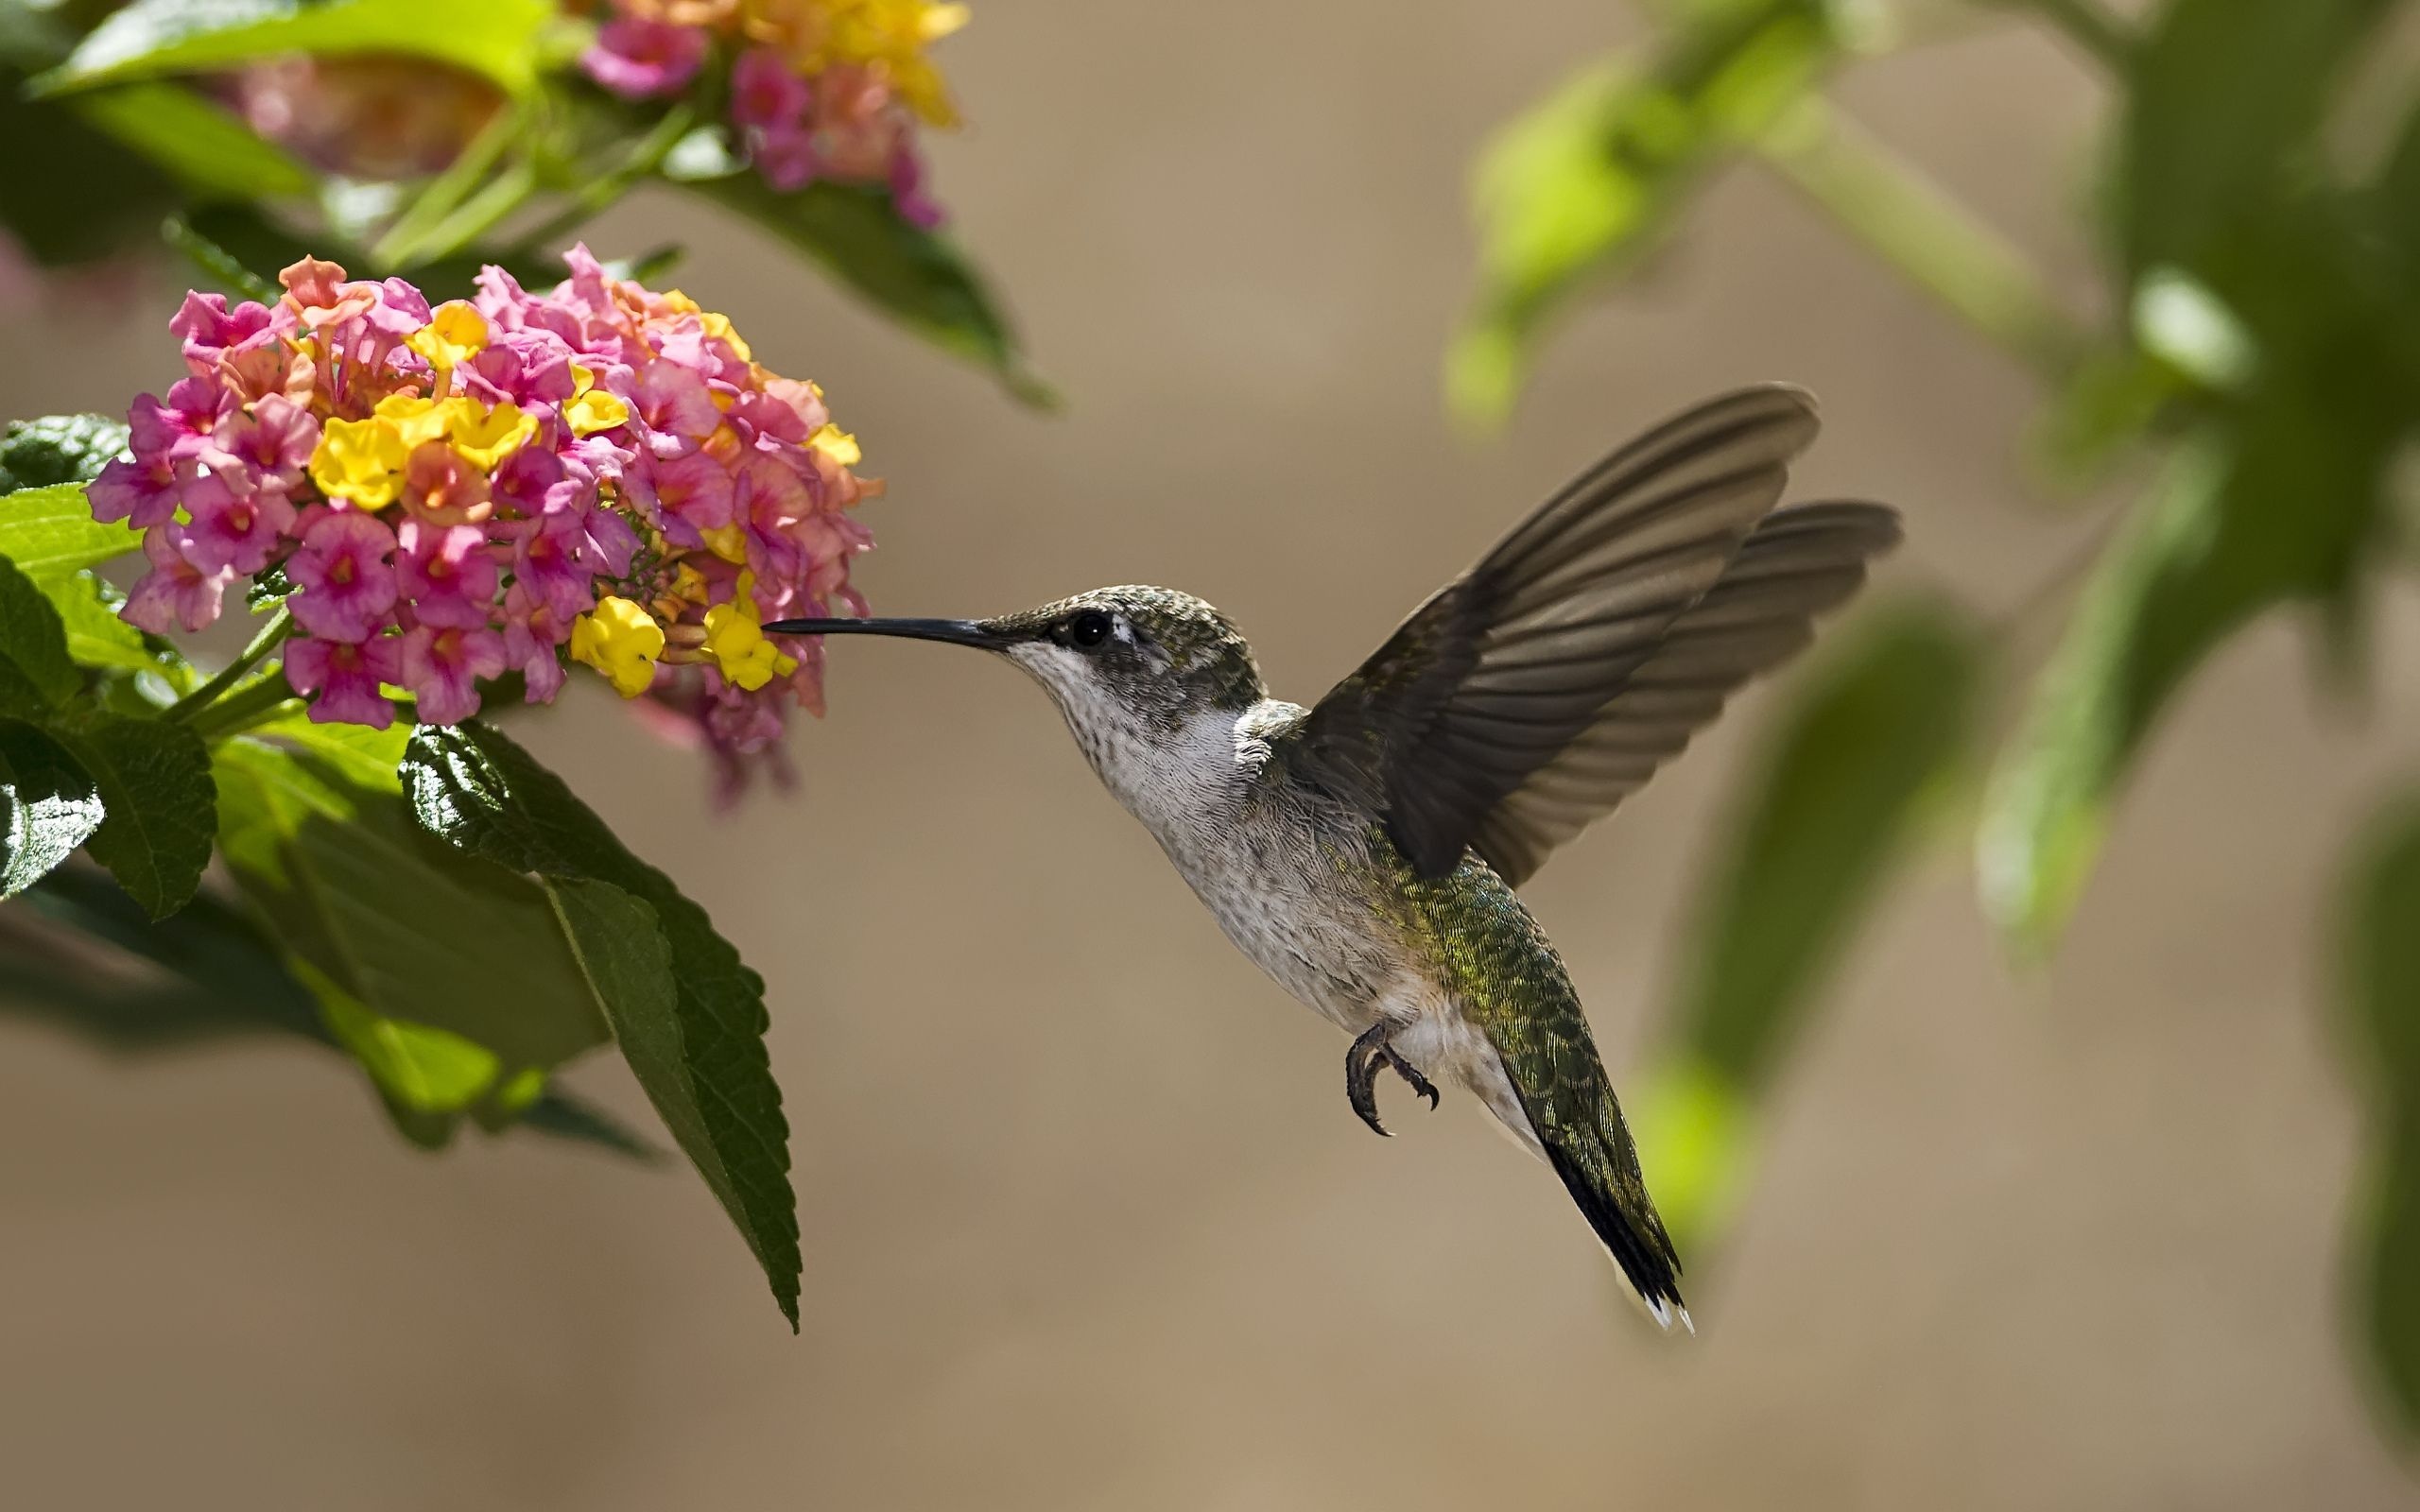 Hummingbird, Elegance in motion, Nature's jewel, Tiny wonder, 2560x1600 HD Desktop